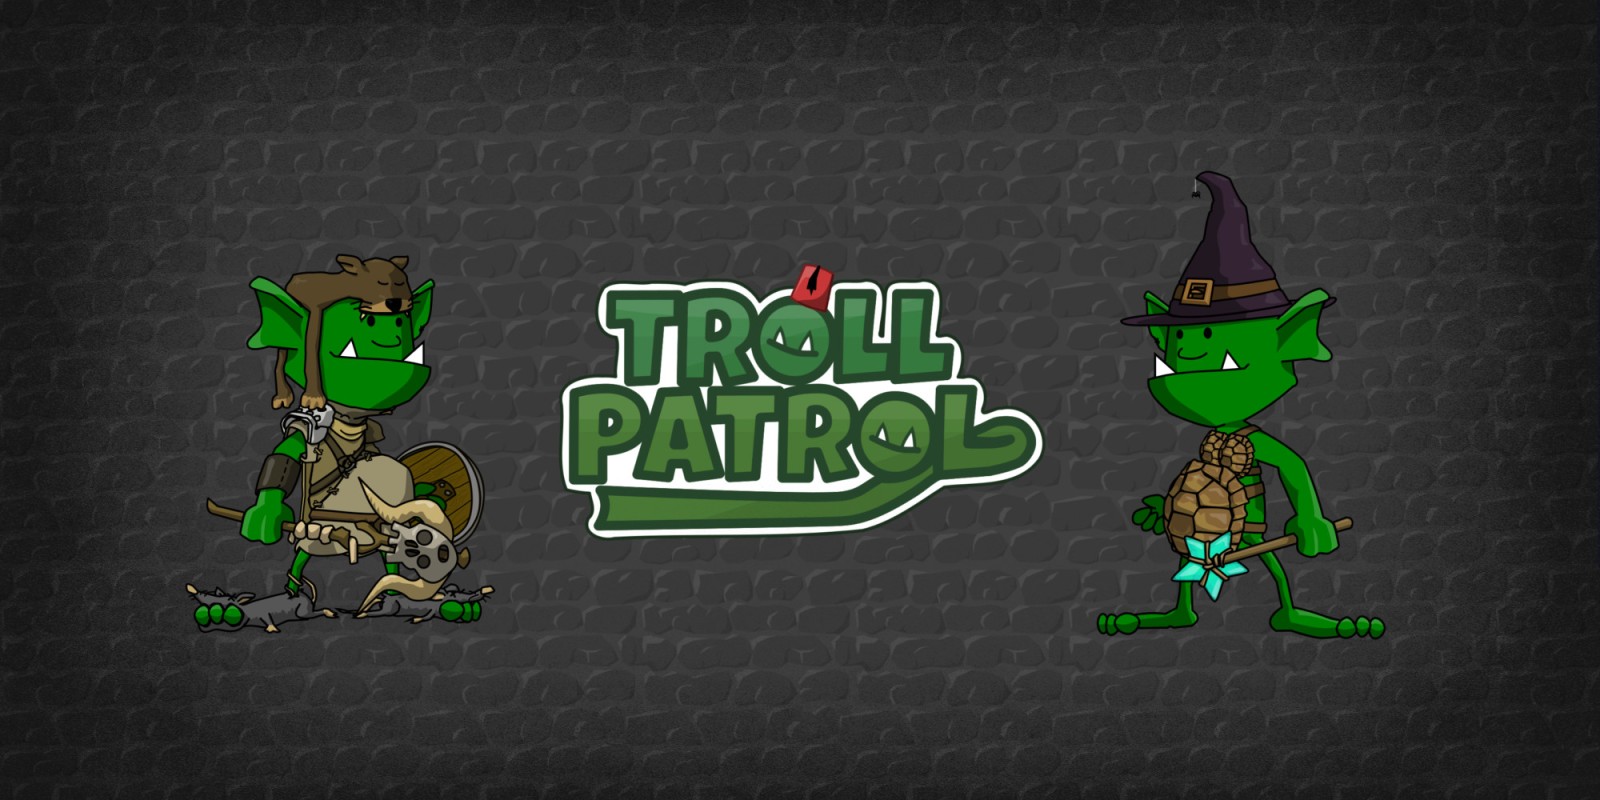 Troll Patrol